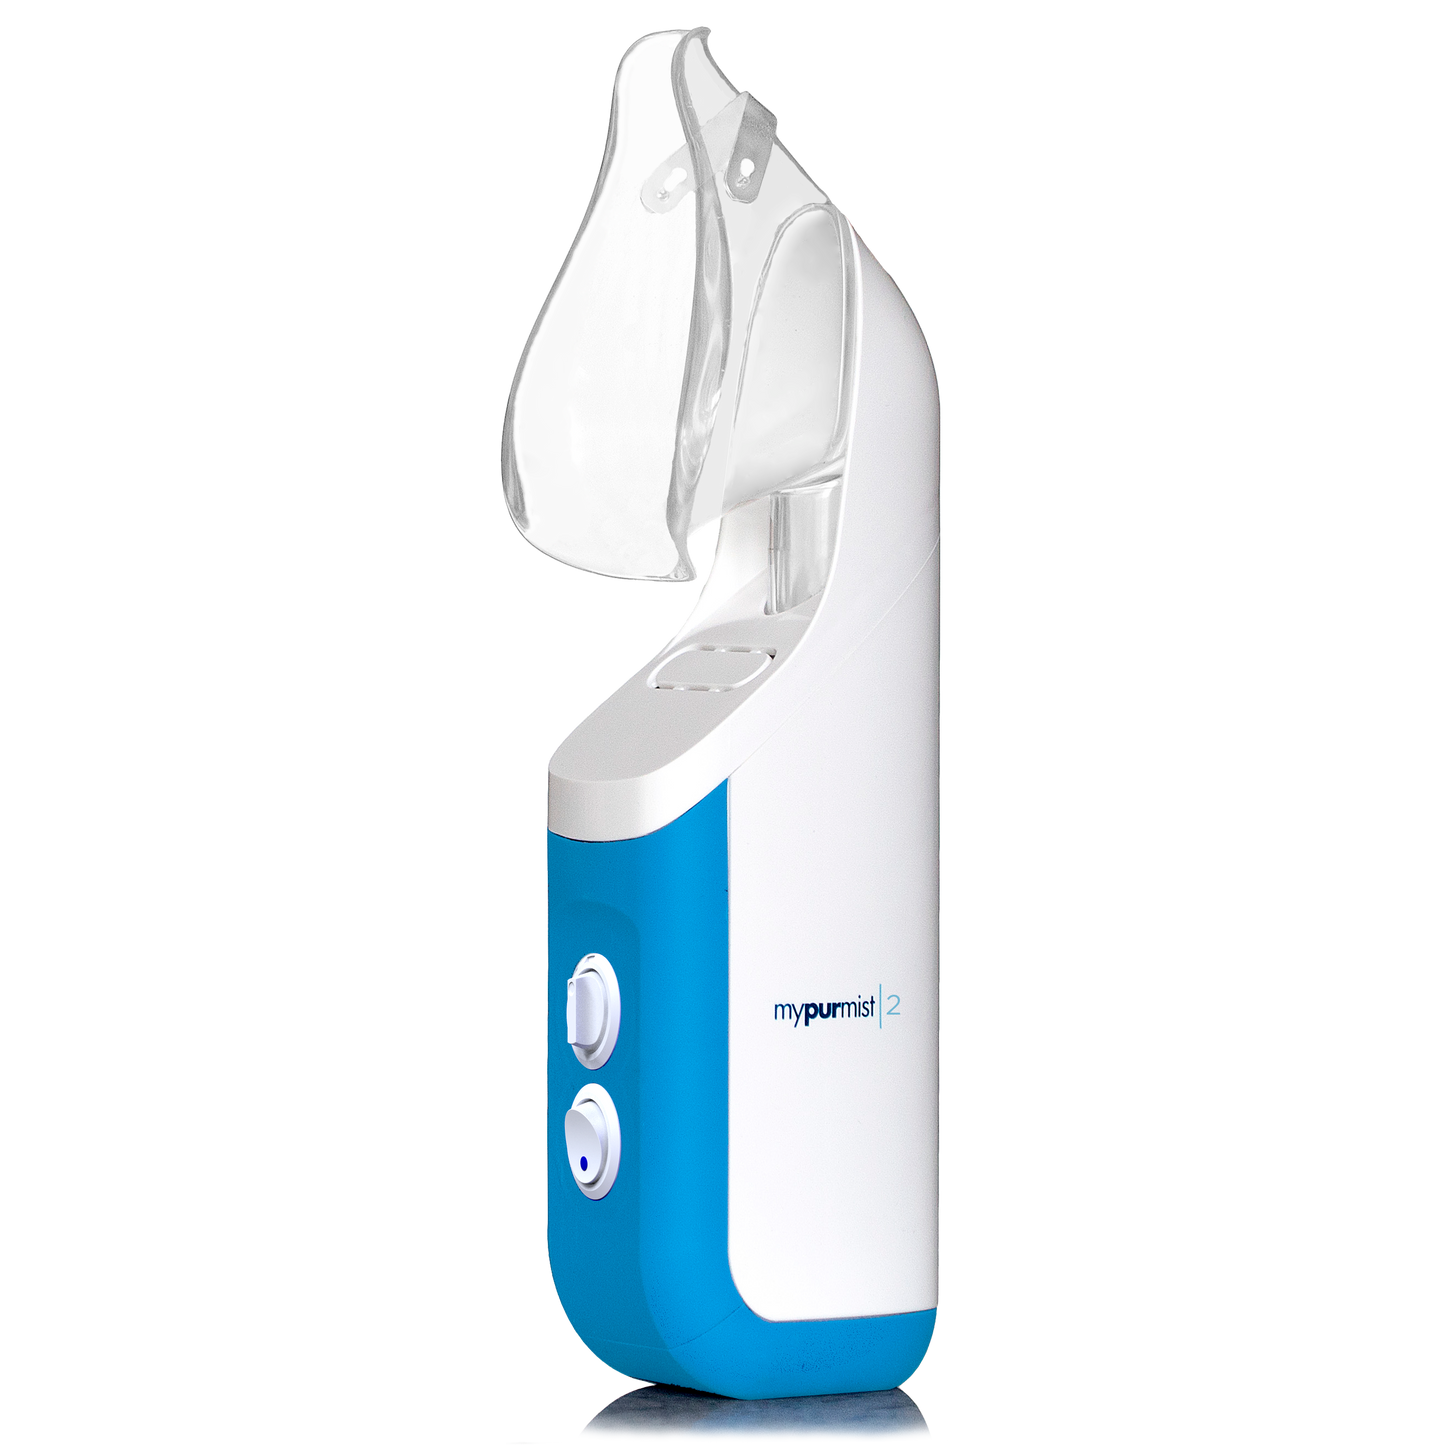 Mypurmist® 2 Handheld Steam Inhaler